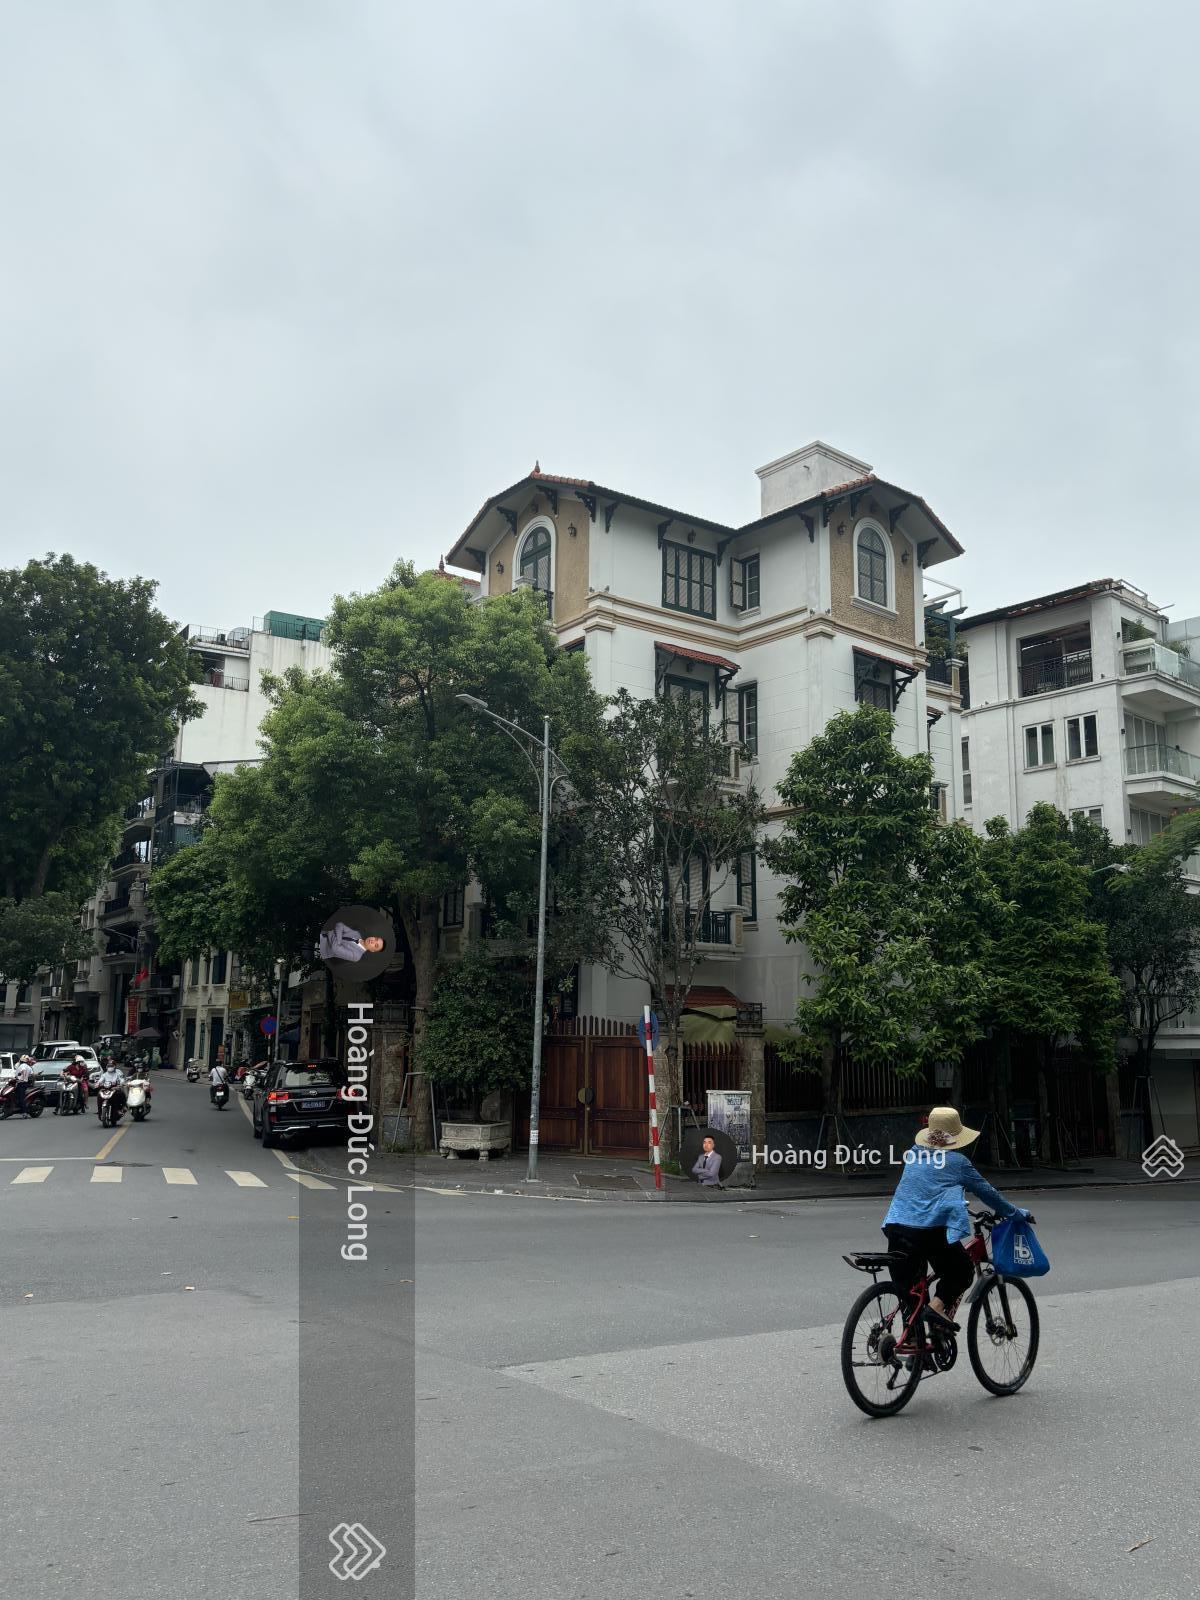 (Cực hiếm) bán nhà mặt phố đường Thanh Niên, lô góc, 83m, 4 tầng, giá 32.3 tỷ LH: 0976388663